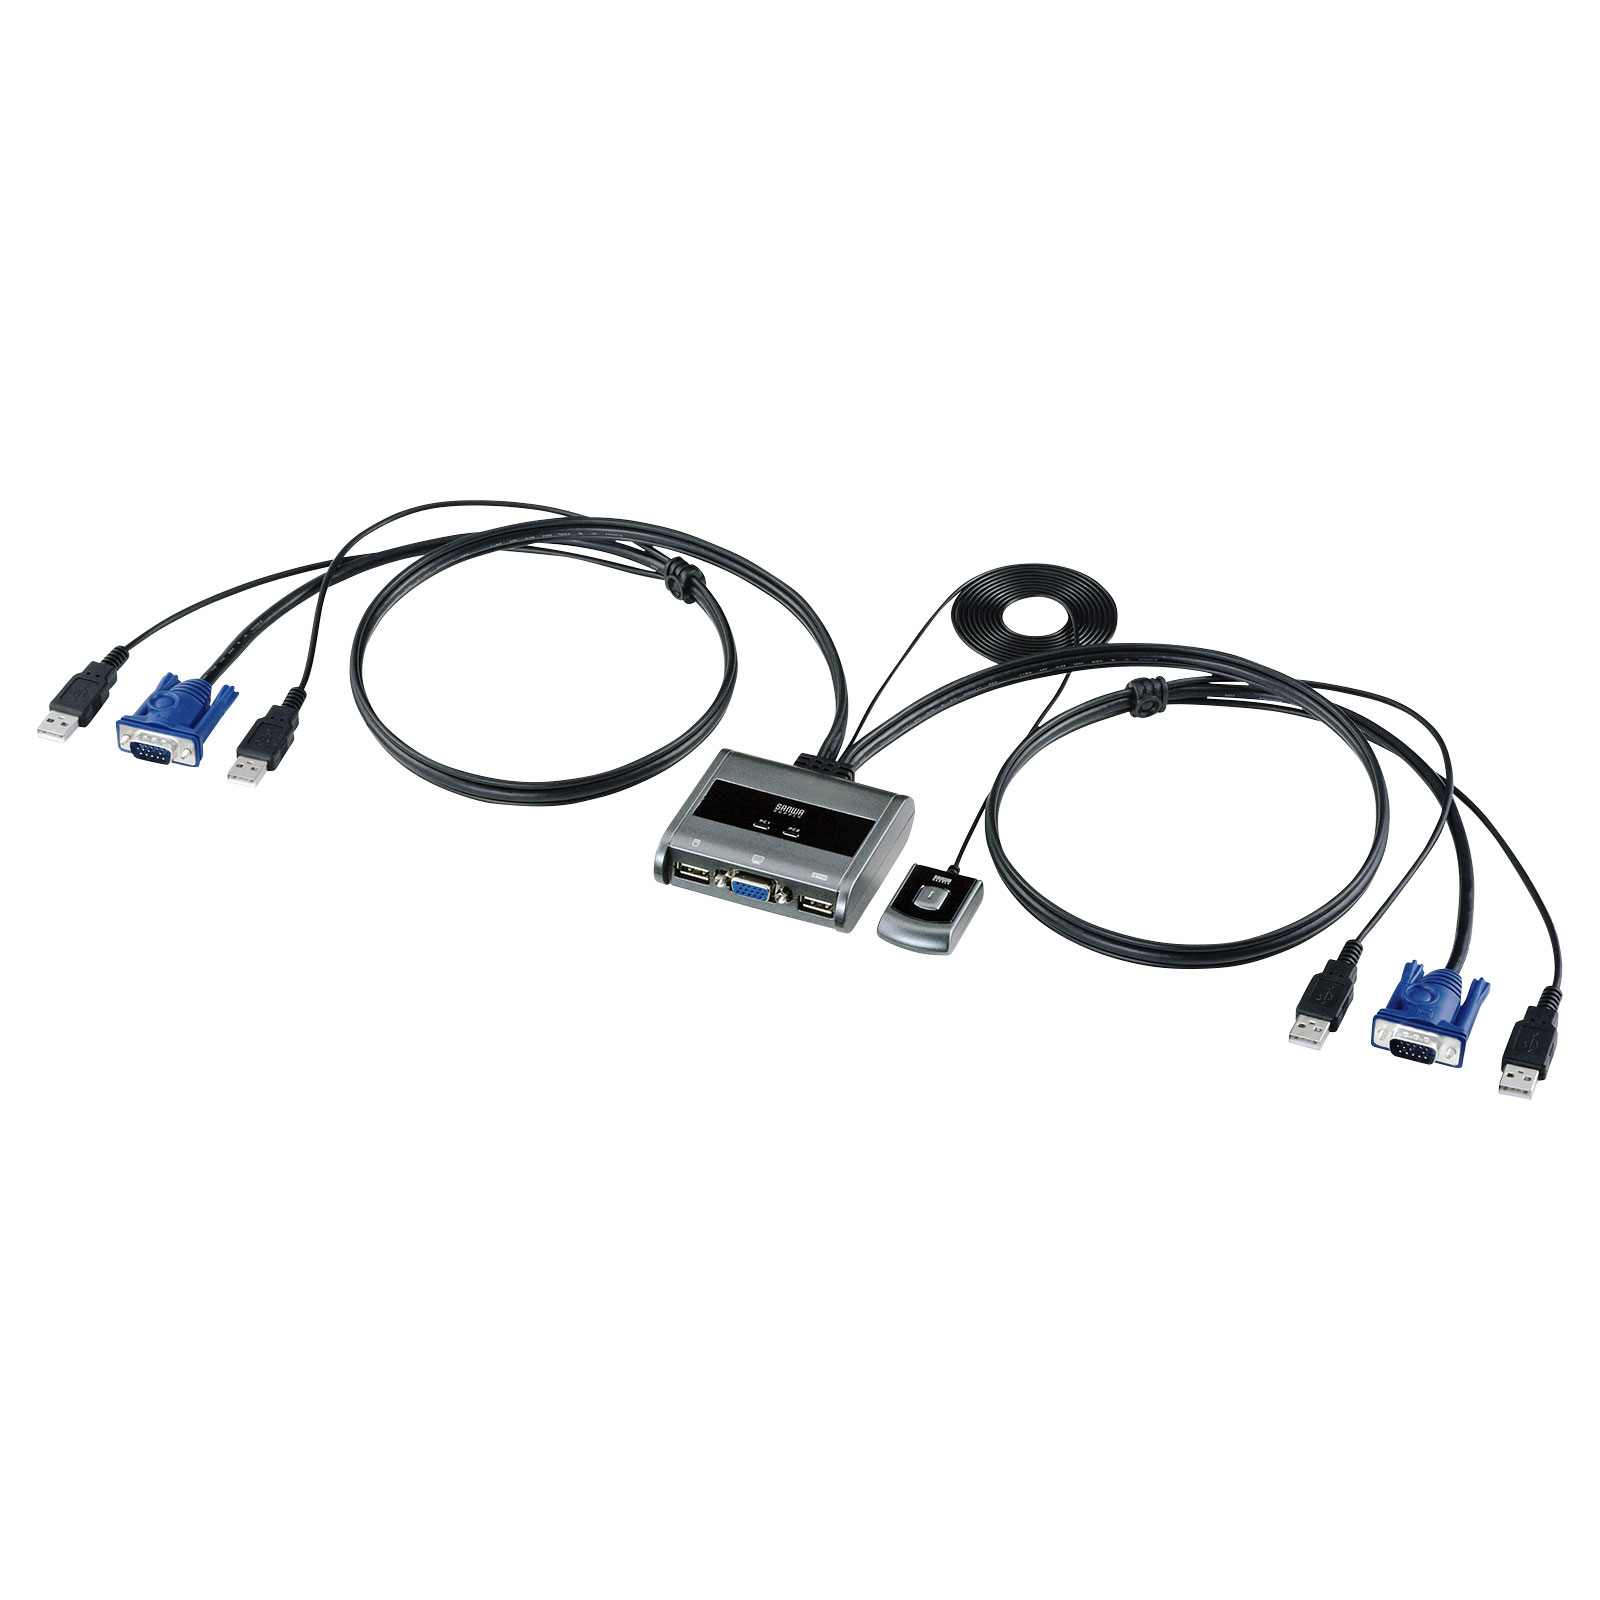 新品?正規品 サンワサプライ HDMI対応パソコン自動切替器 4:1 SW